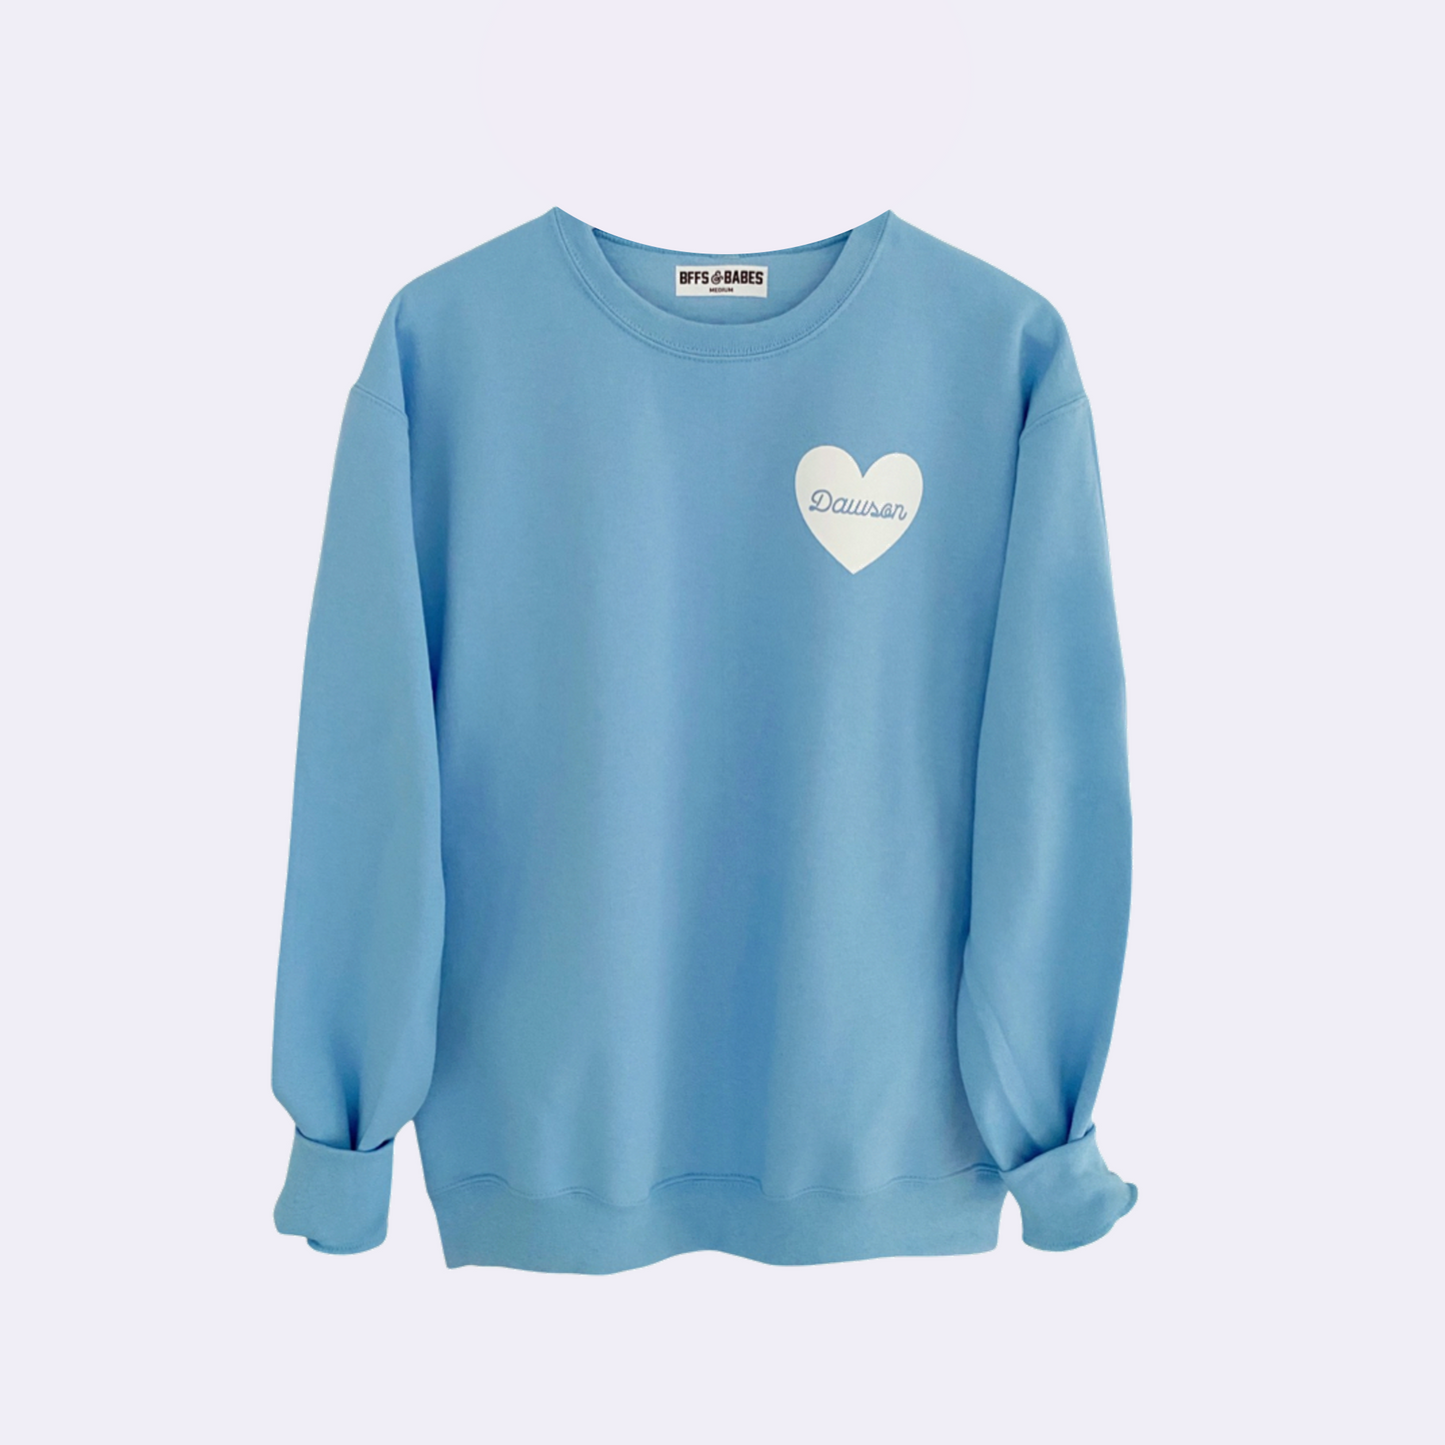 HEART U MOST ♡ light blue personalizable script heart sweatshirt